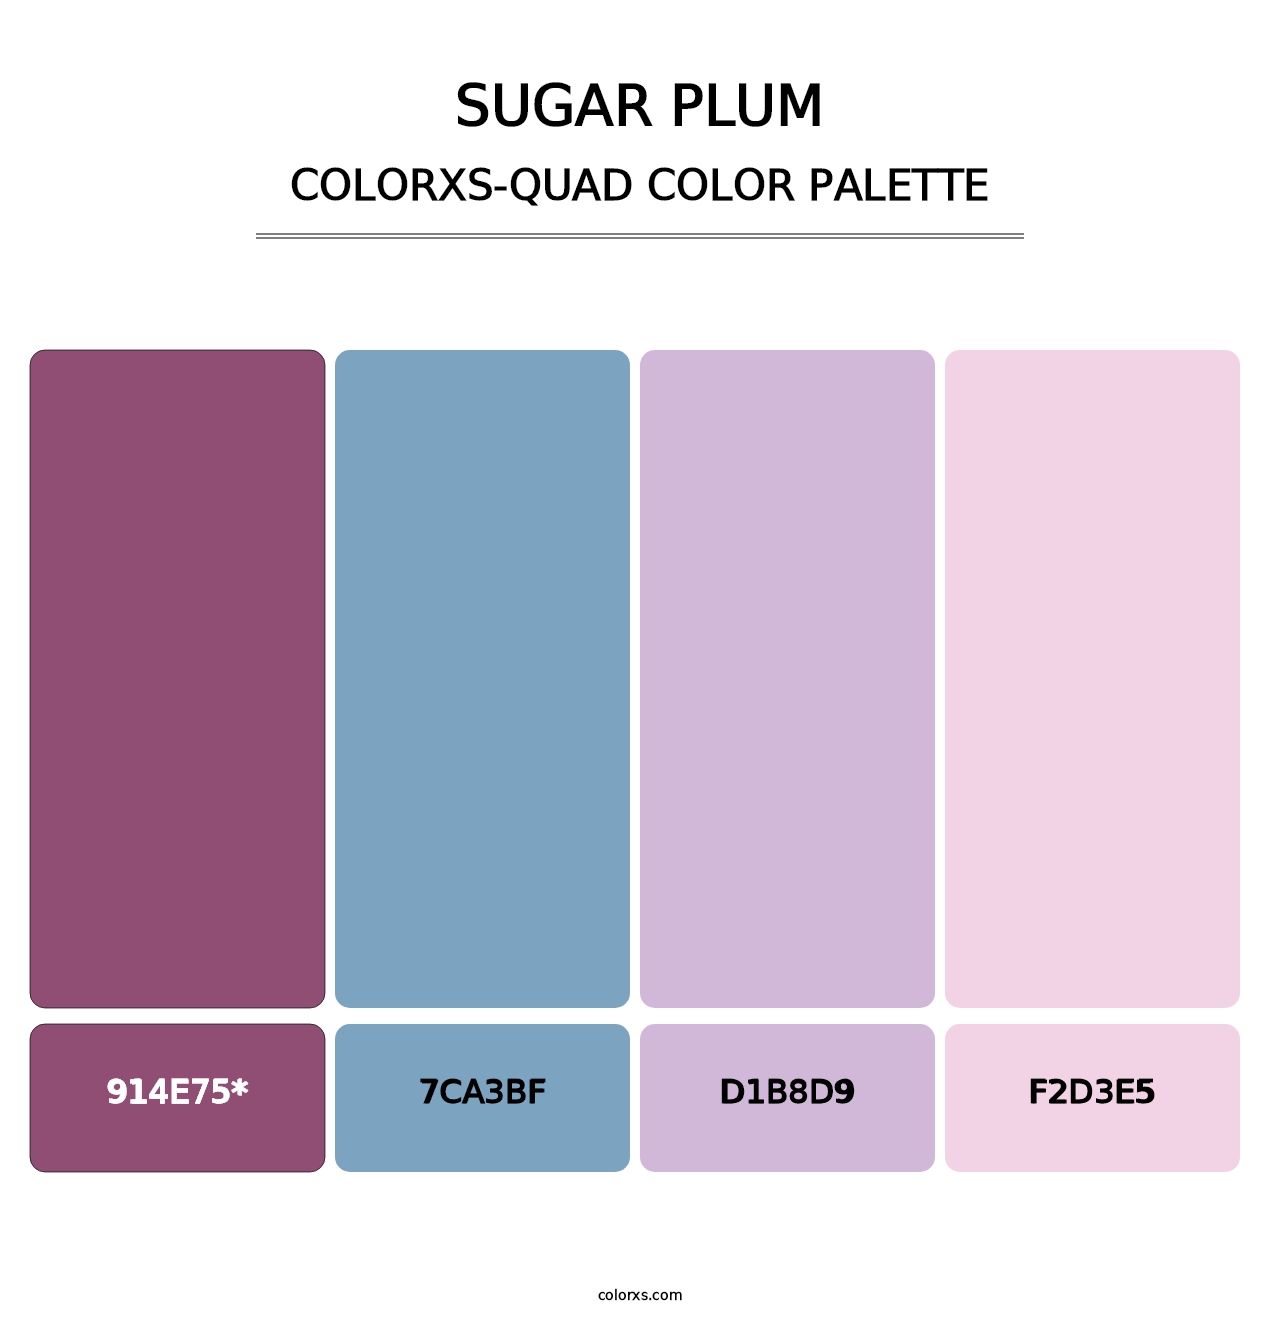 Sugar Plum - Colorxs Quad Palette